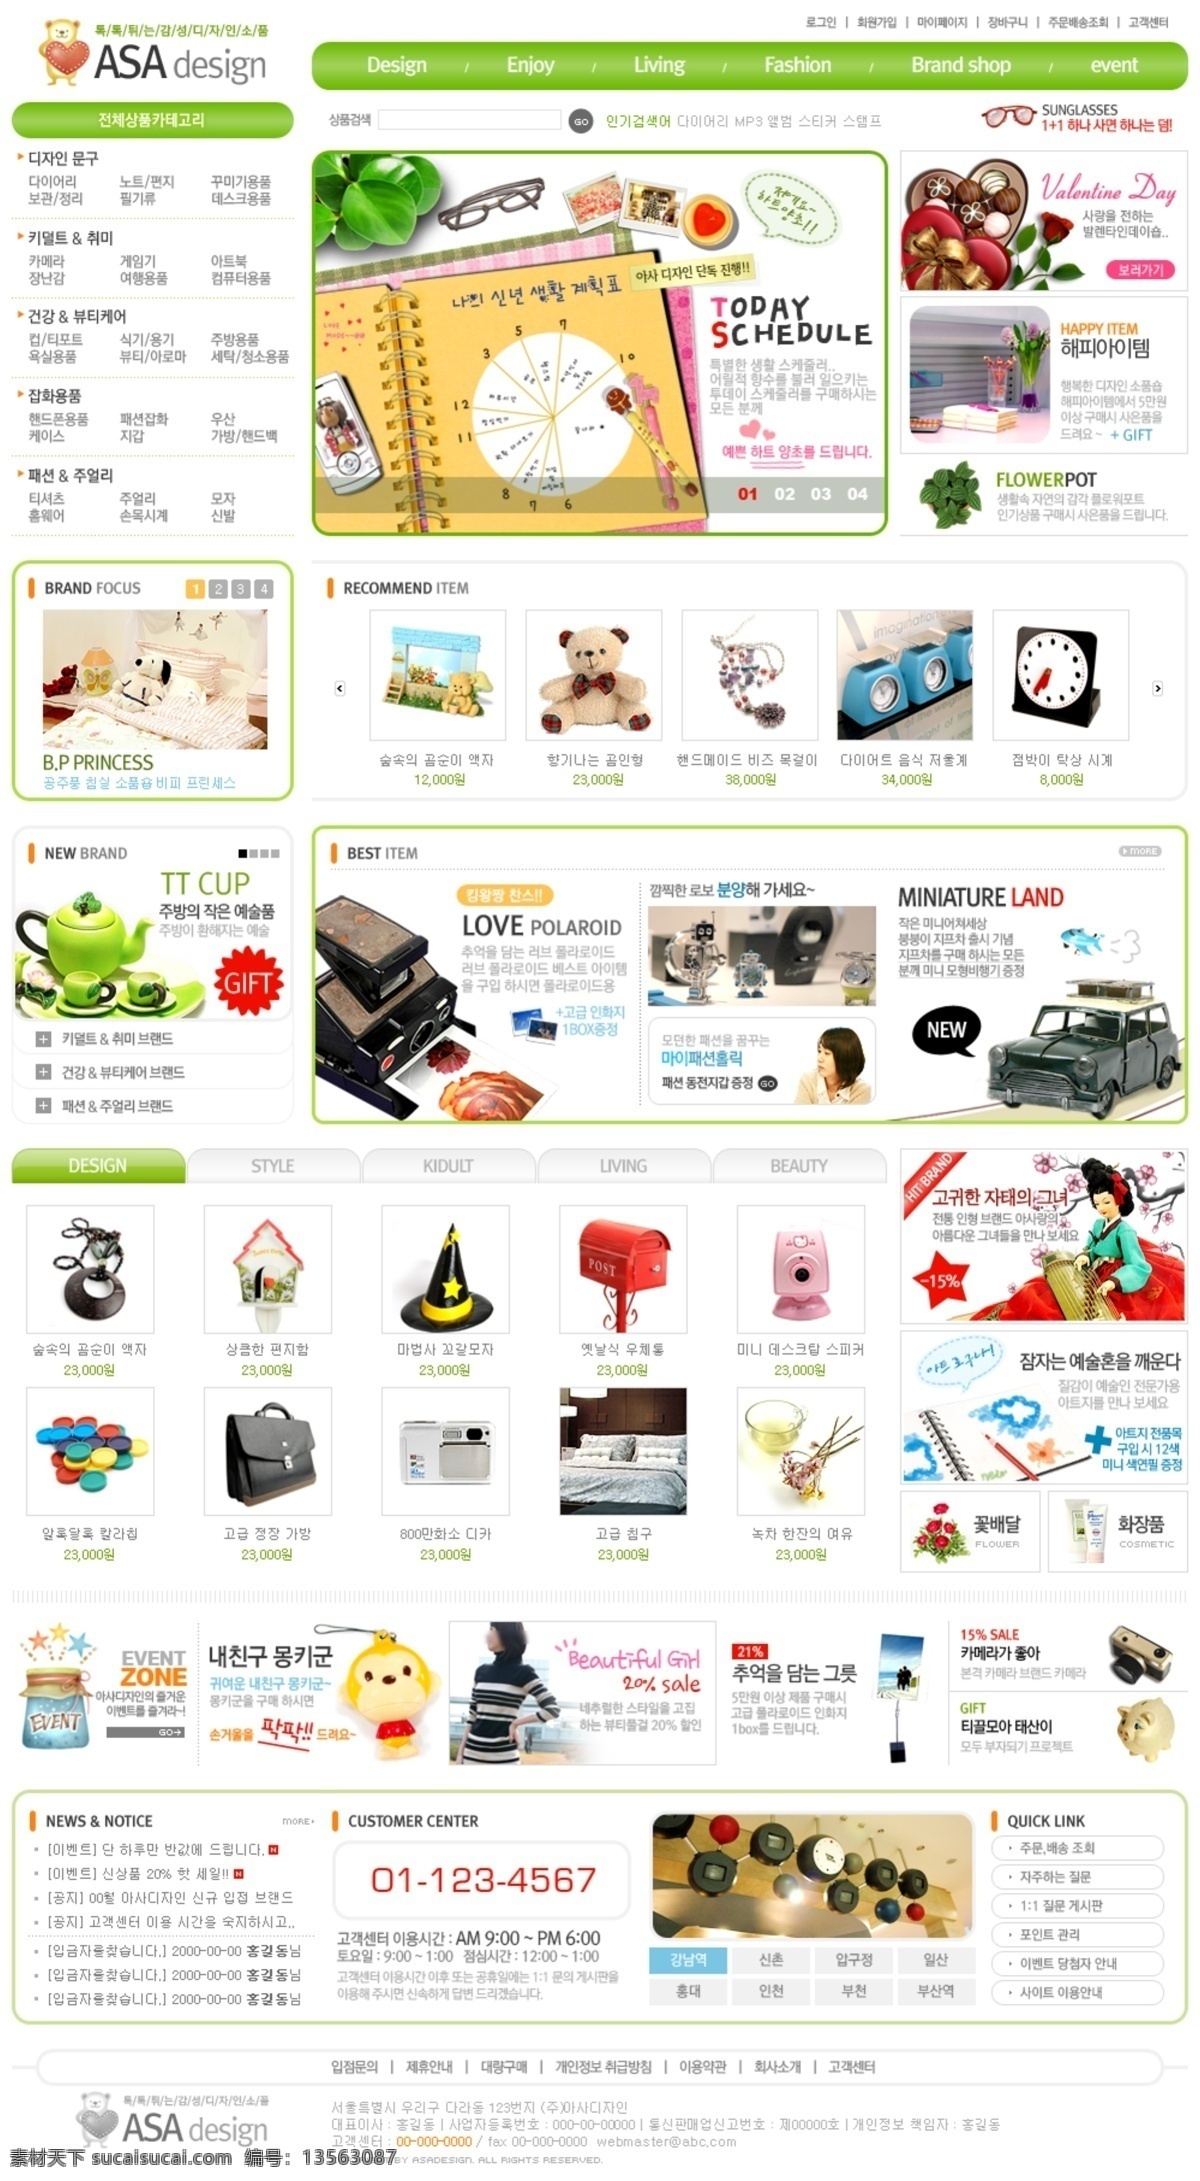 韩国模板 韩国网页模板 皮包 体育用品 玩具 网页模板 文具 源文件 销售网站 整站模板 日韩模板 日用品码网站 psd源文件